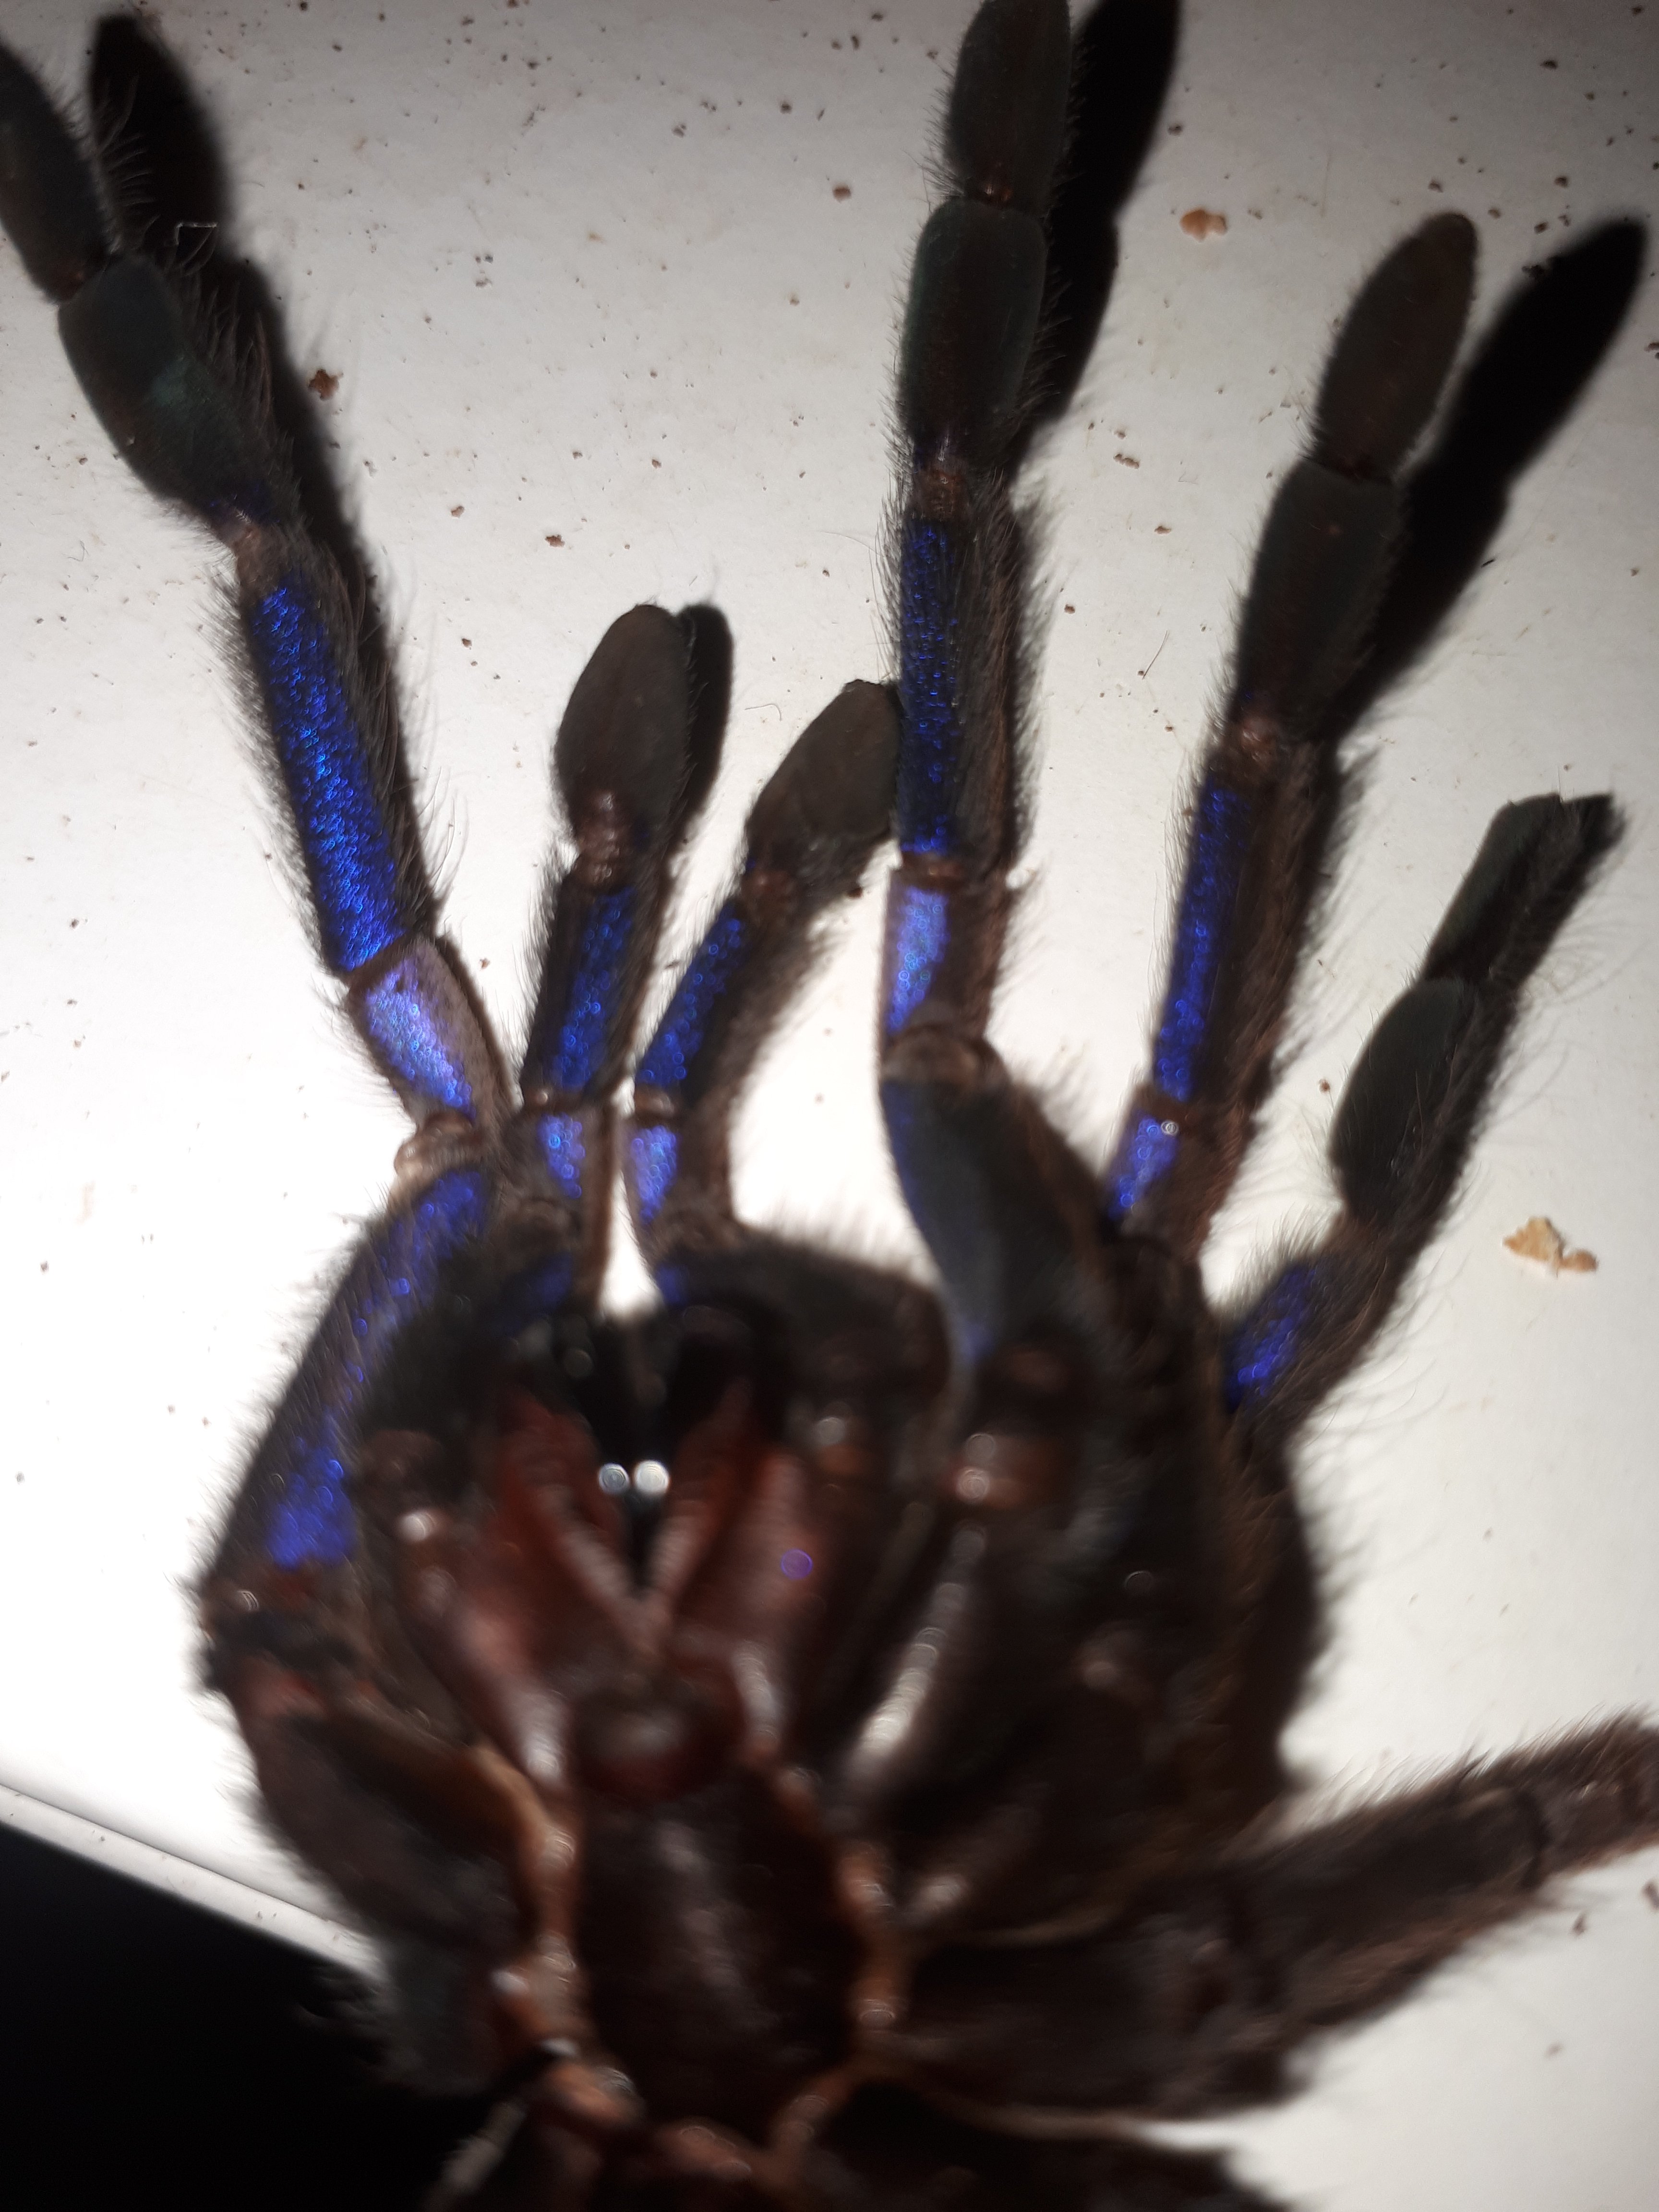 Chilobrachys sp. electric blue